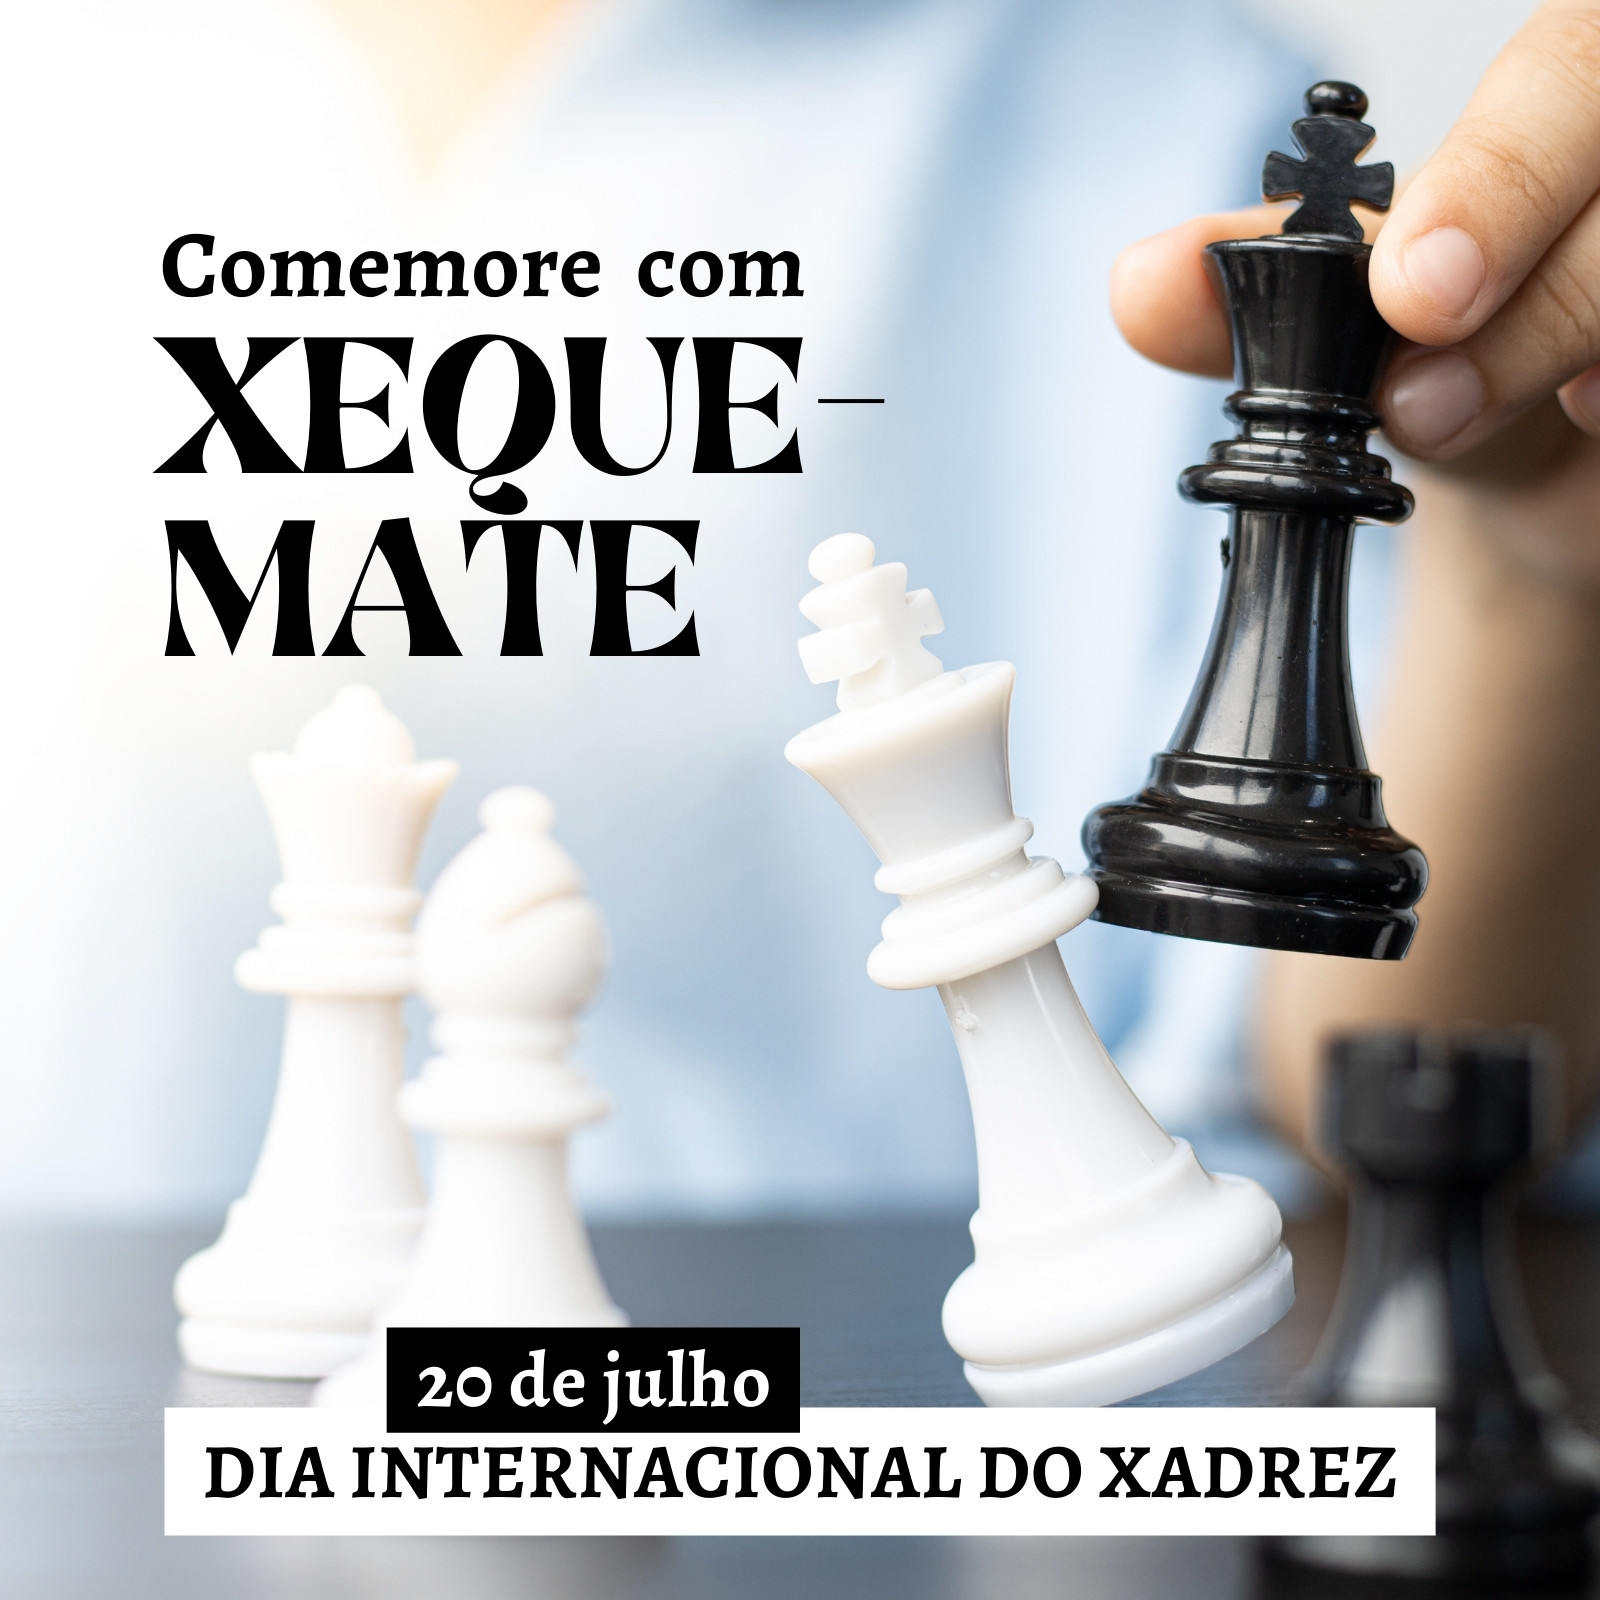 dia internacional de xadrez com ilustração de posição de xeque